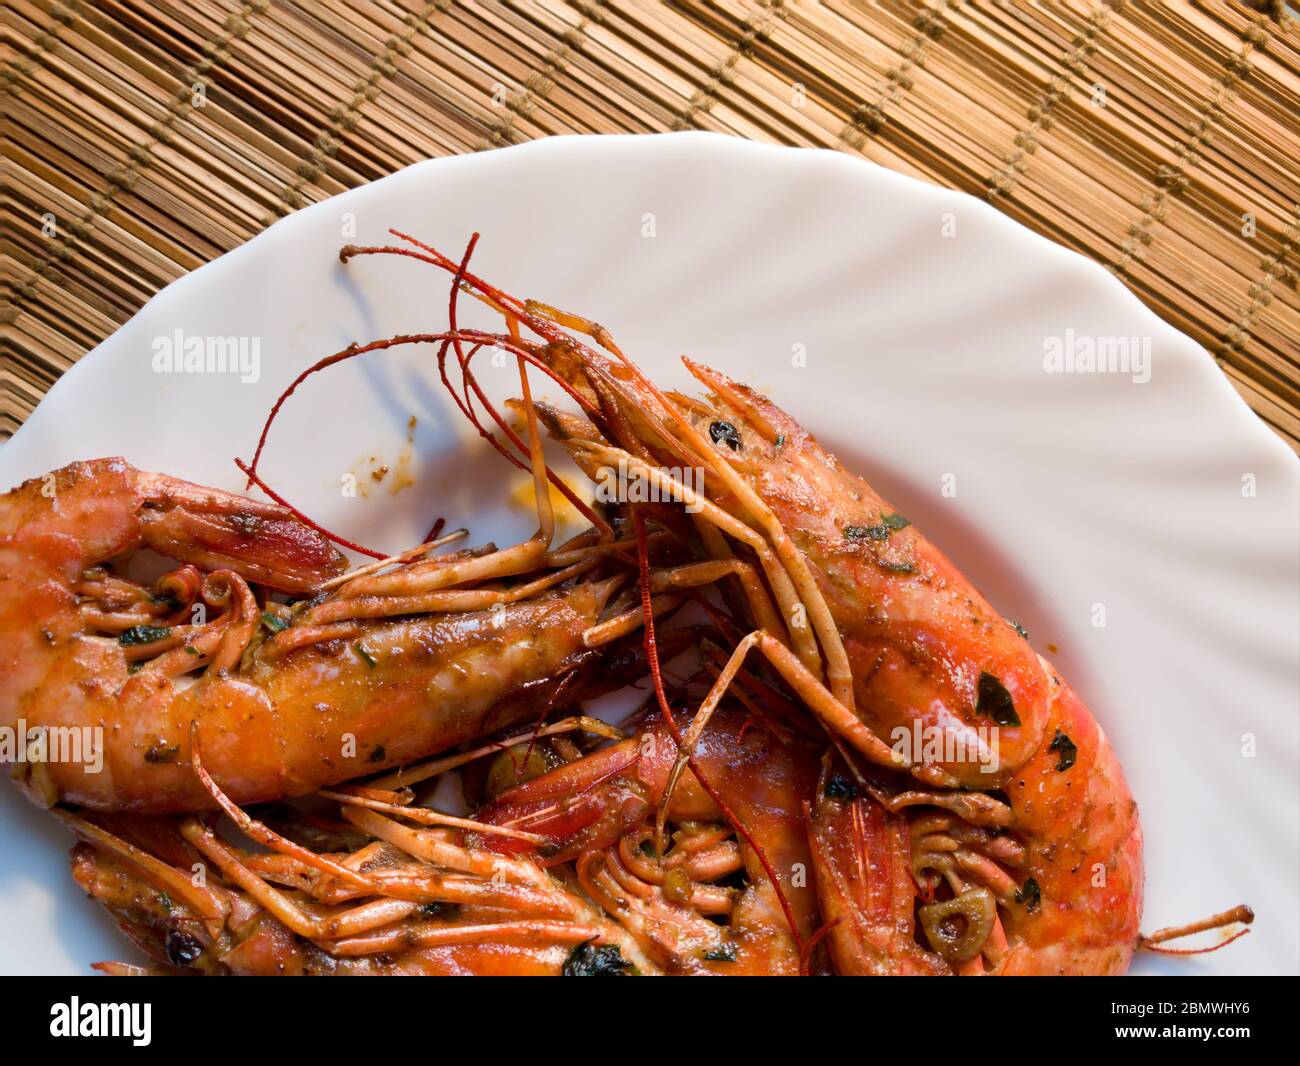 Un homard frit sur une assiette blanche, une paille doublure sous l'assiette,  ail, gros plan Photo Stock - Alamy